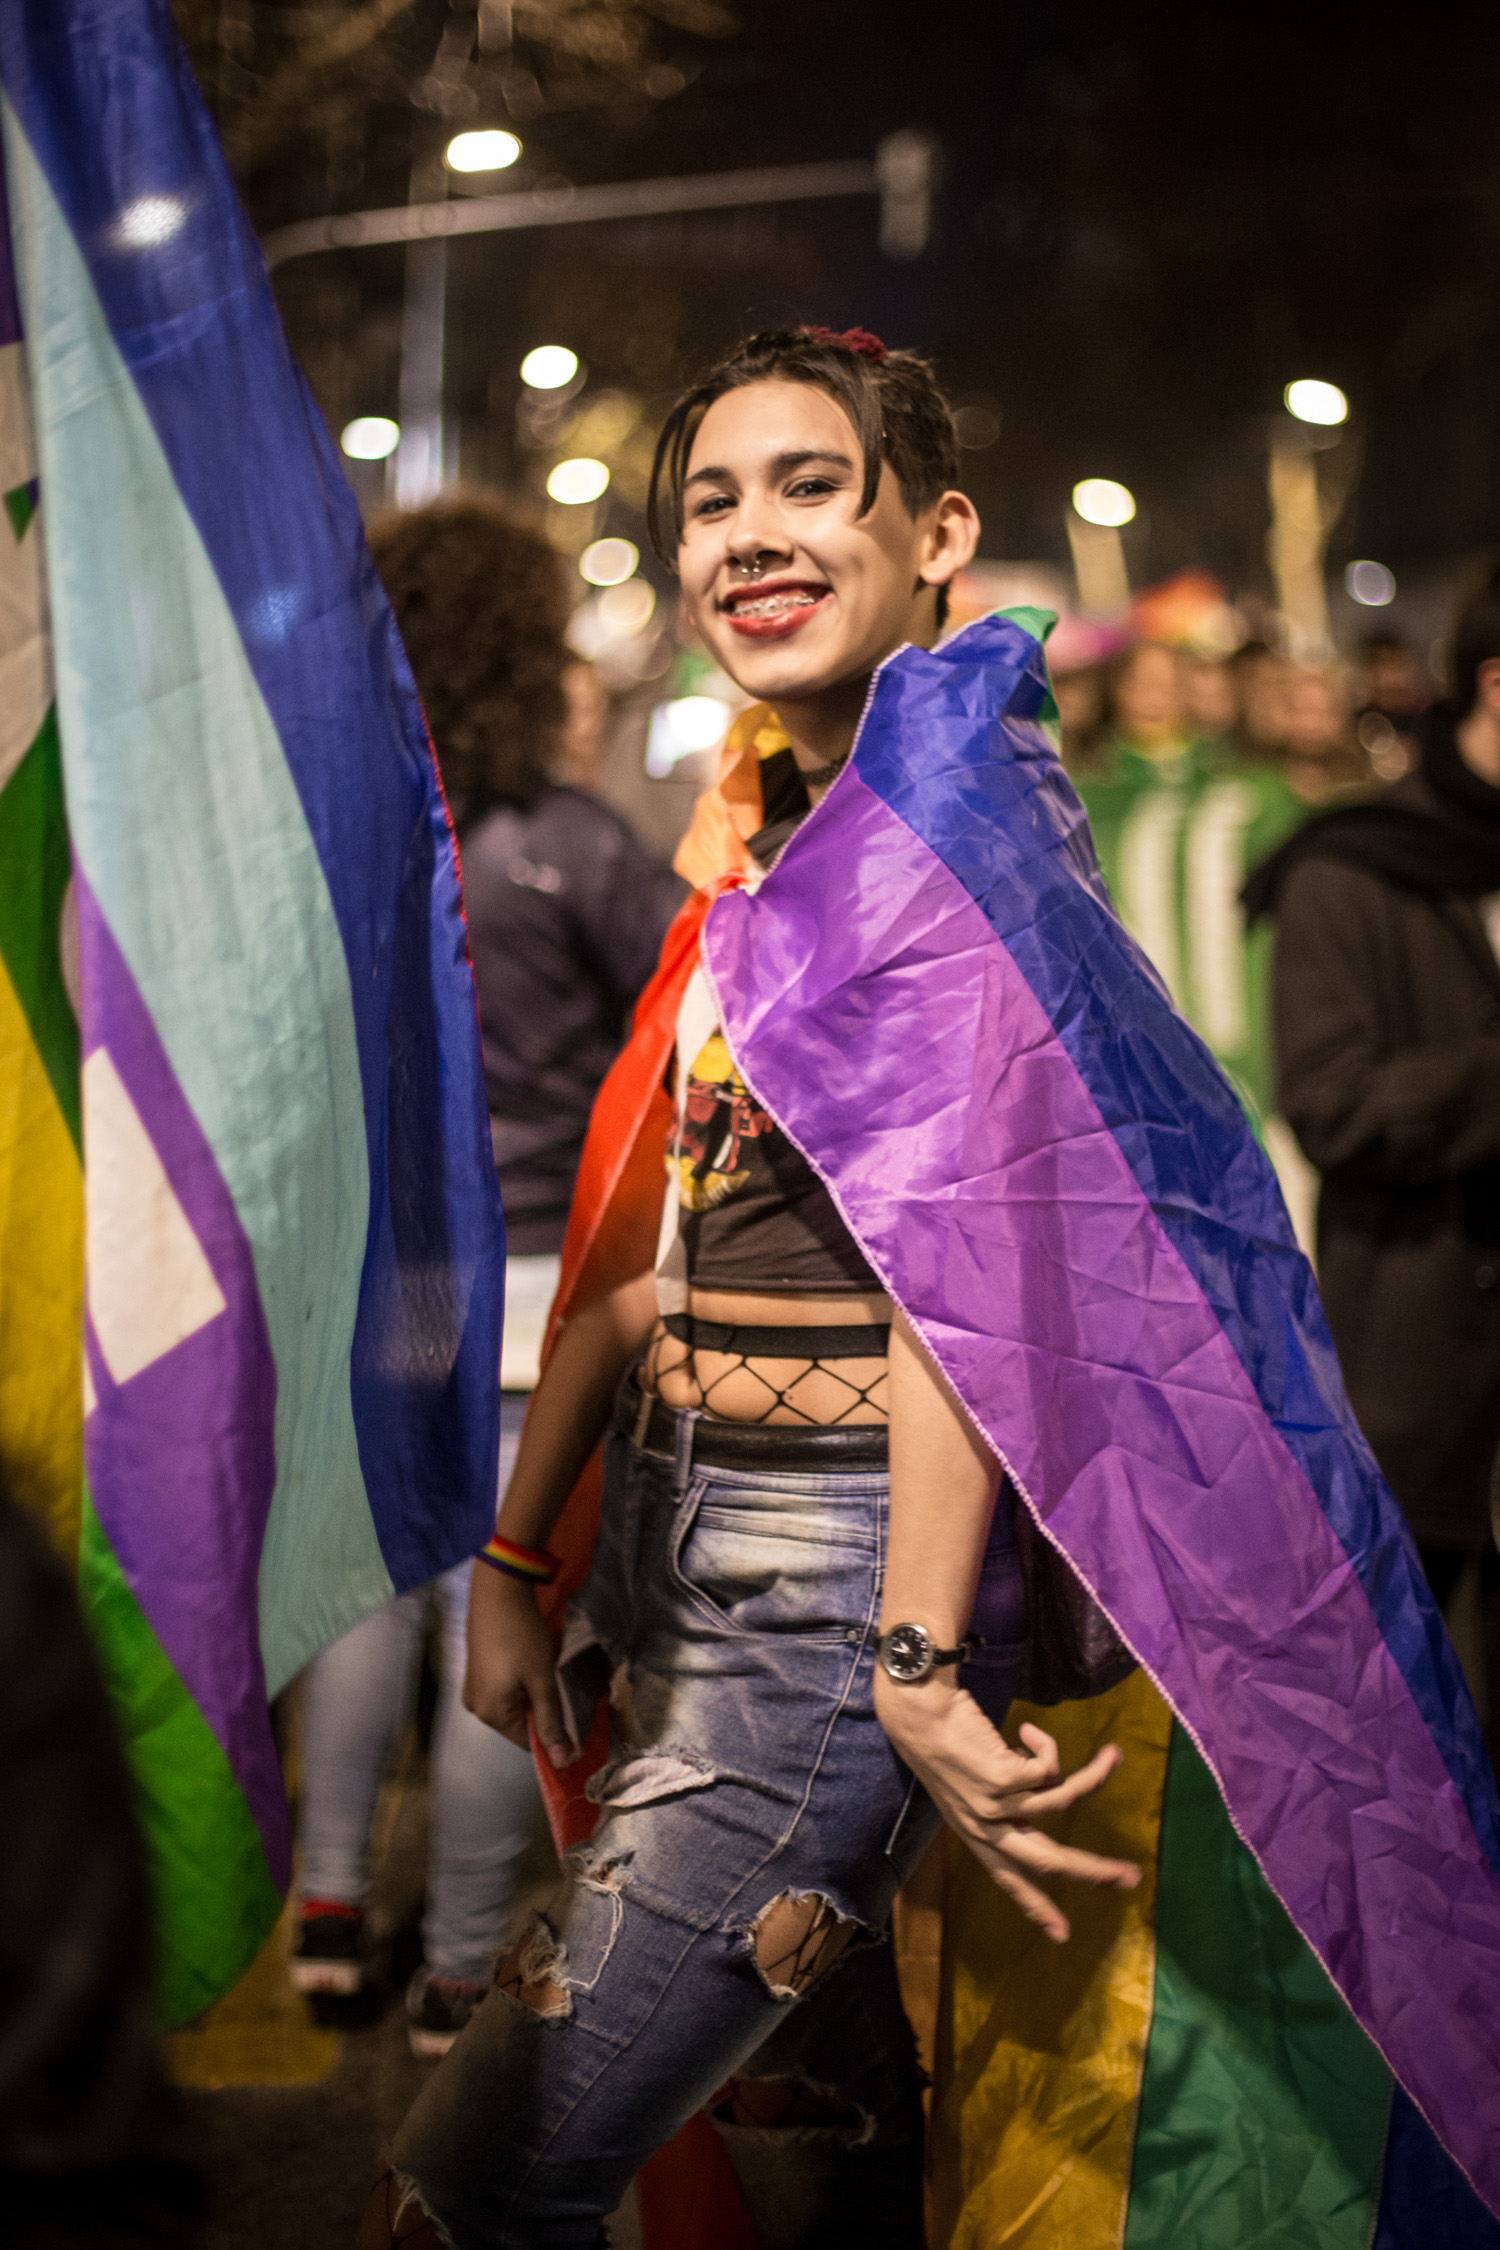 El grito cada vez más fuerte: marcha y abrazo contra los travesticidios y transfemicidios